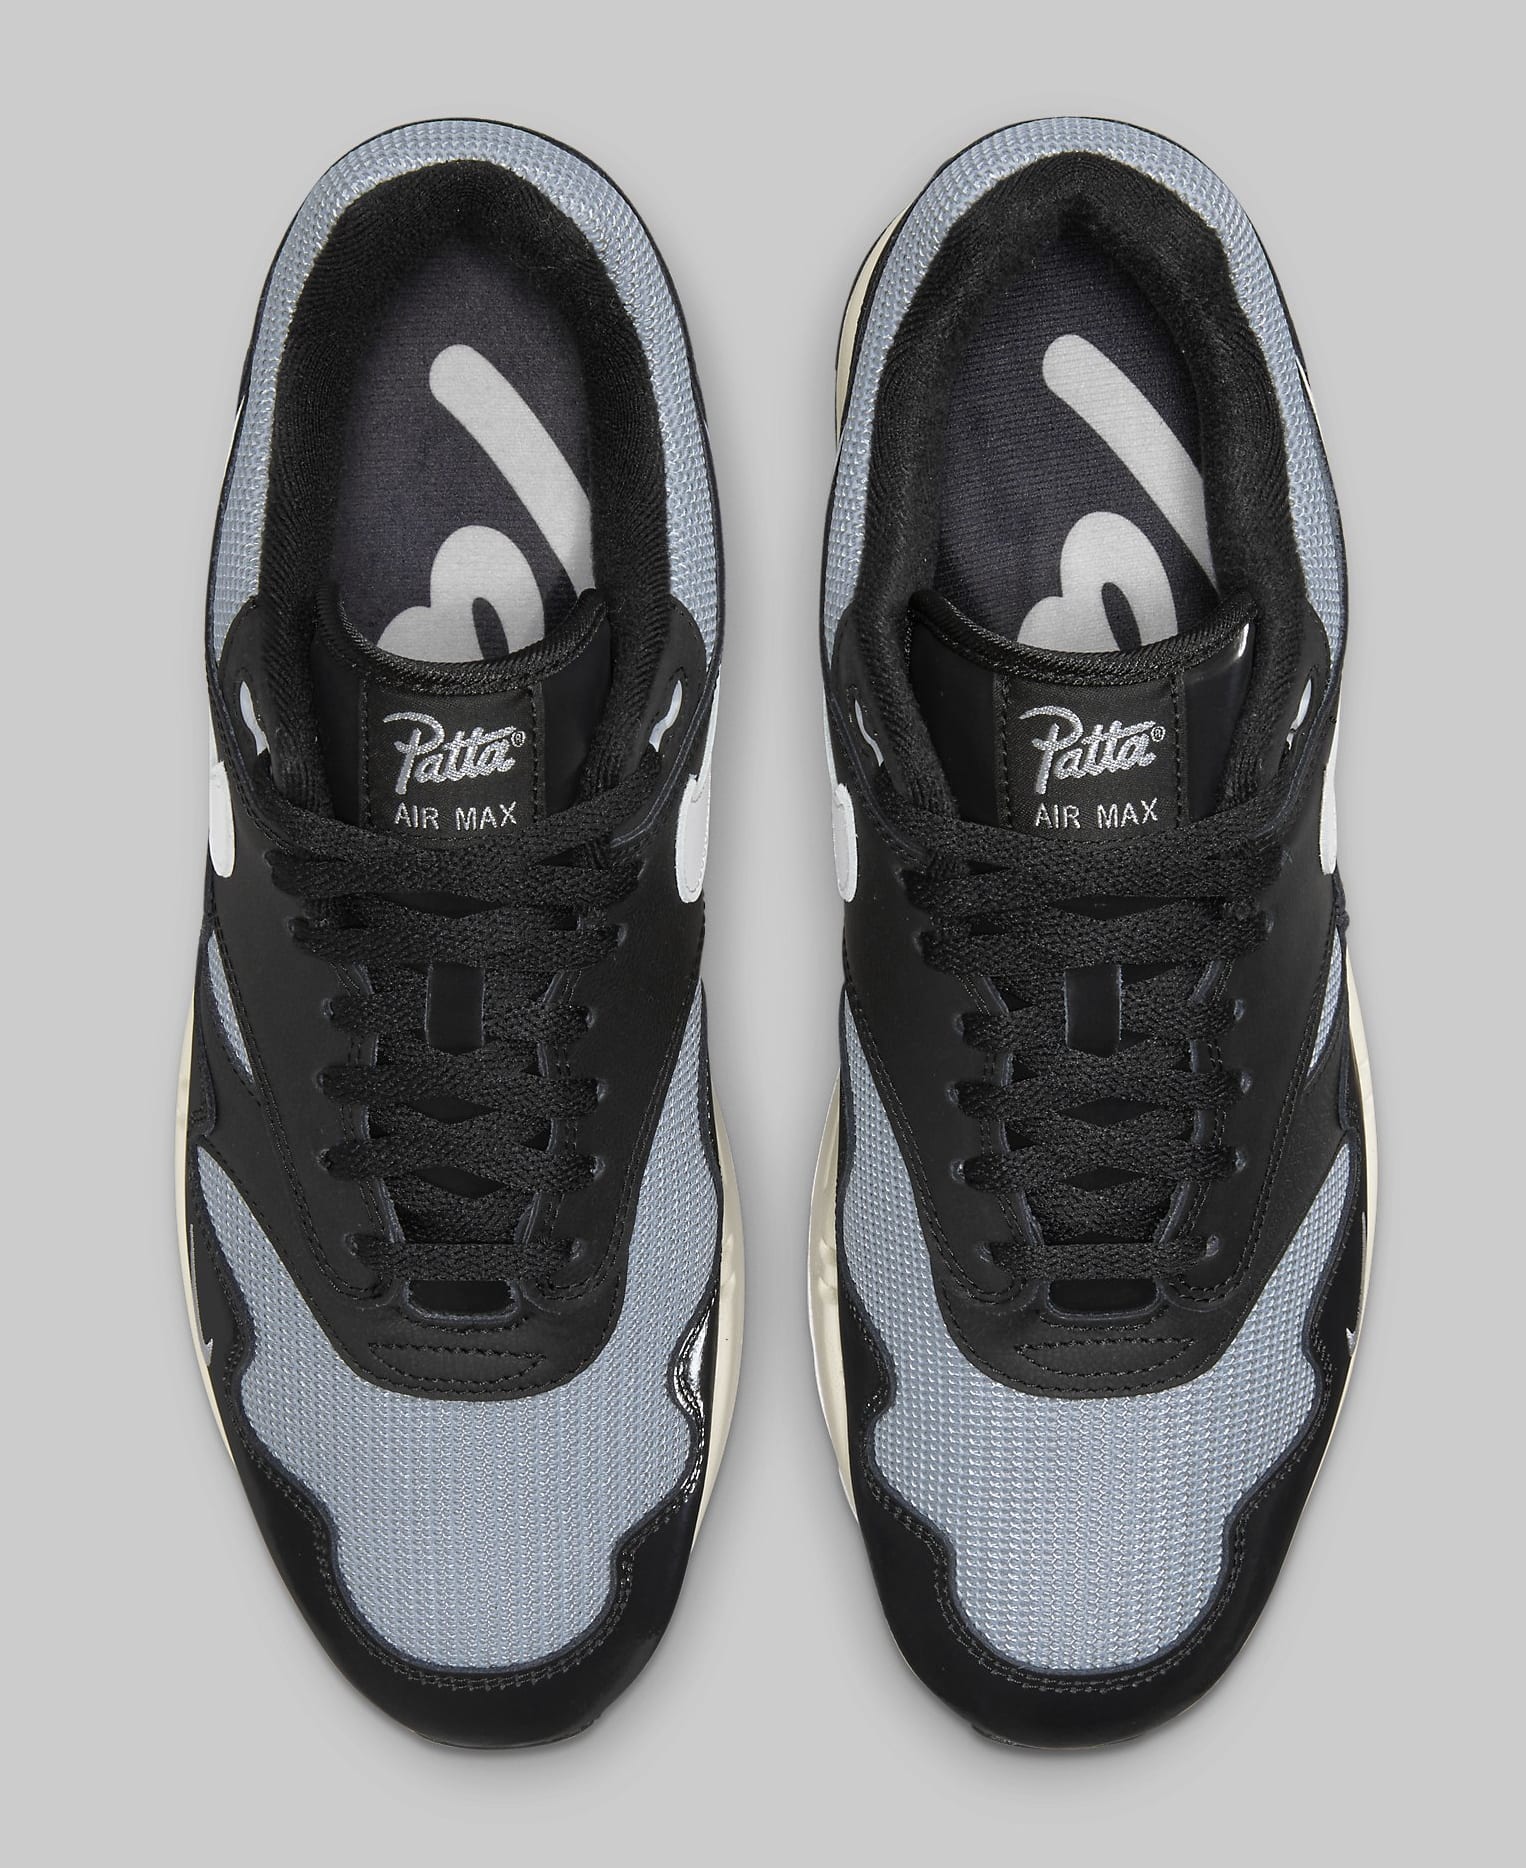 Patta x Nike Air Max 1 'Black/Metallic Silver' DQ0299-001 Top